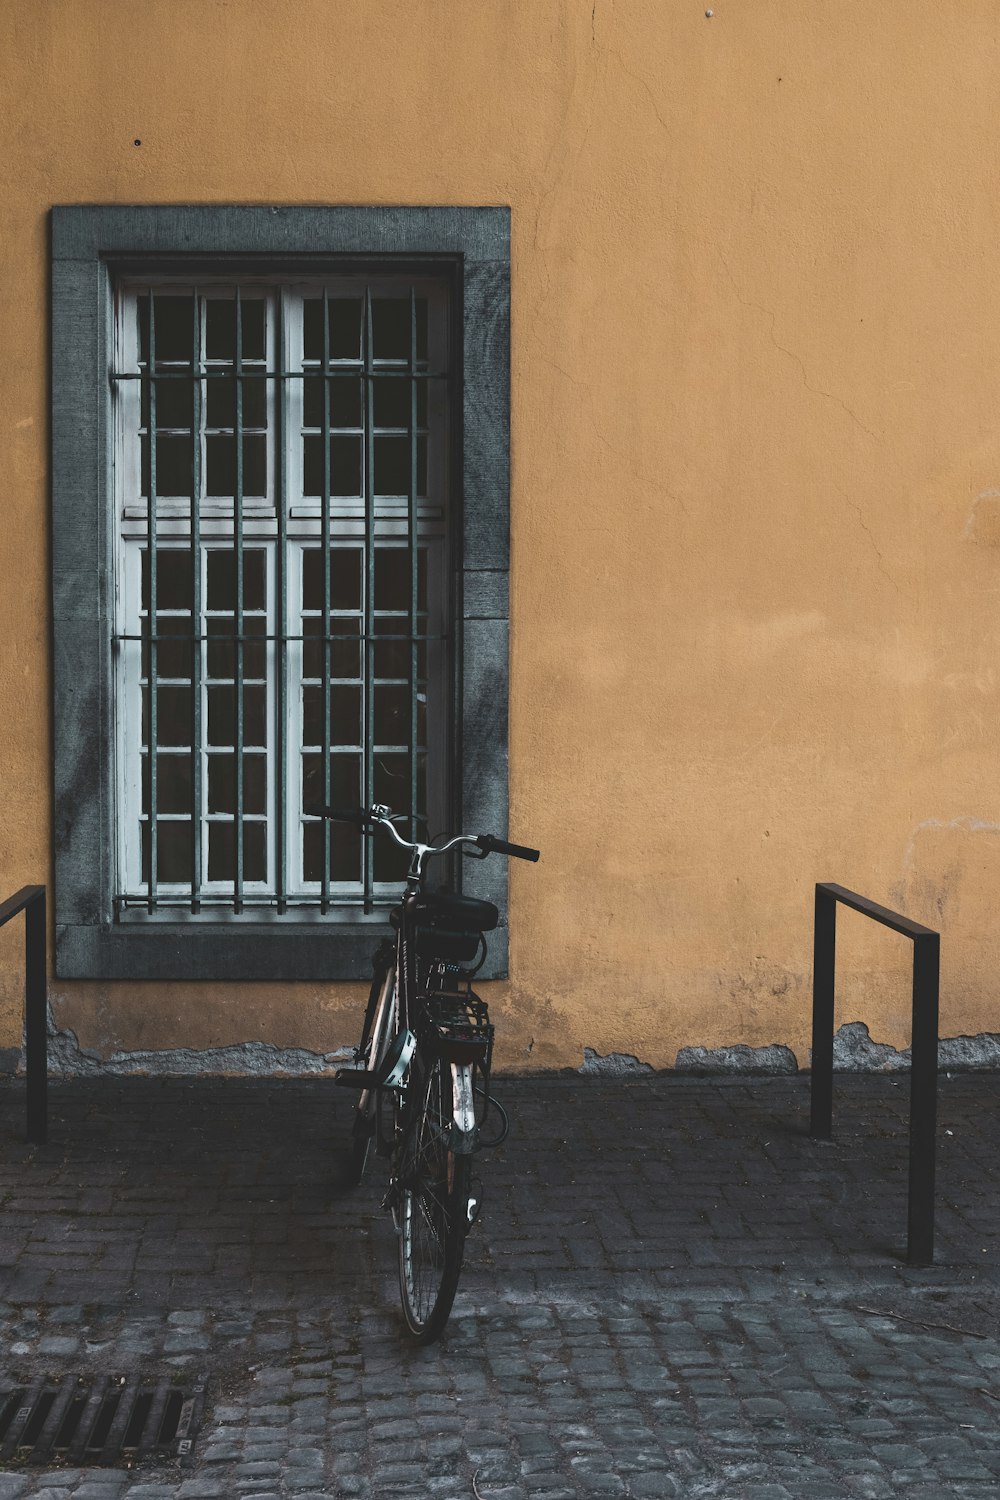 bici nera parcheggiata vicino alla finestra